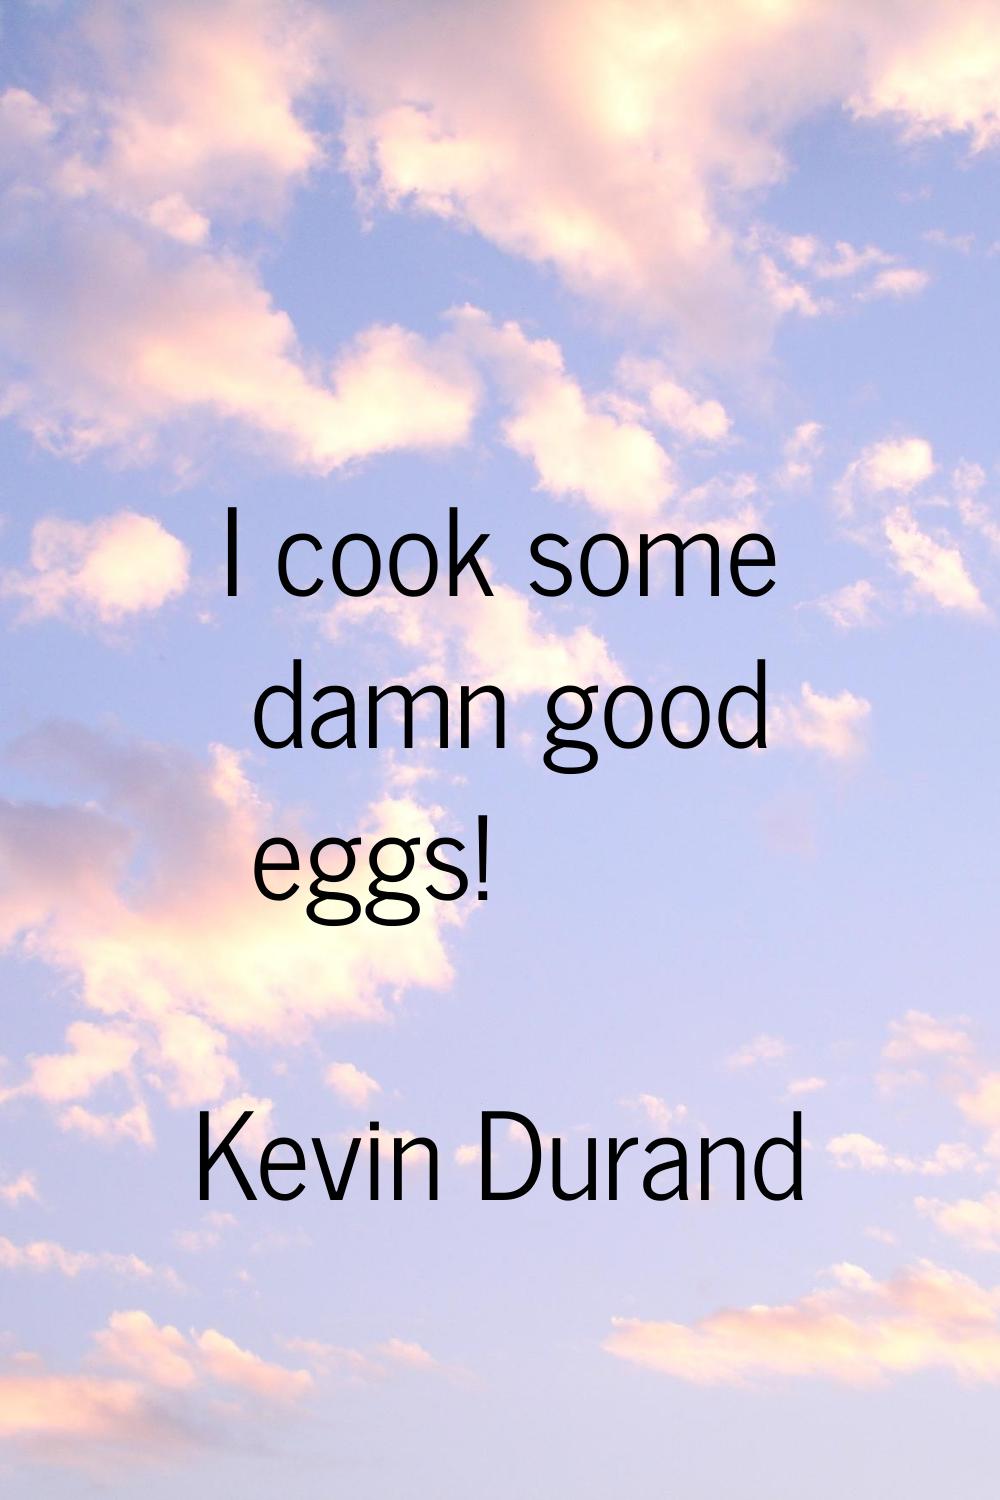 I cook some damn good eggs!